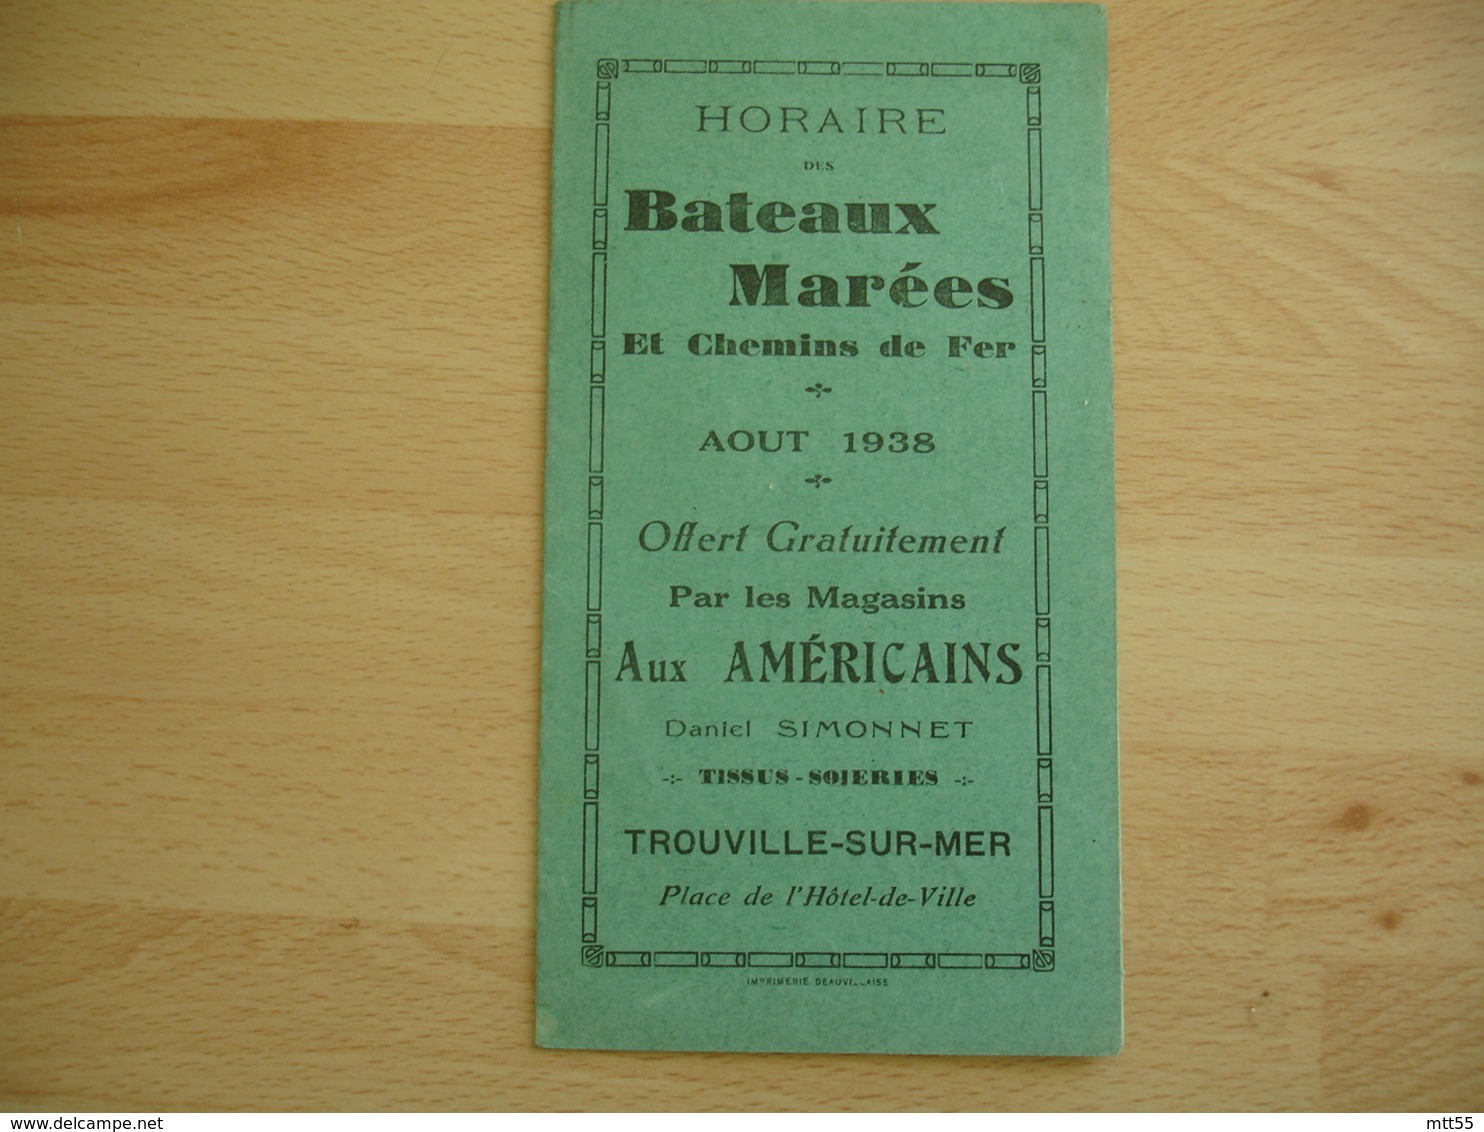 Magasins Aux Americains Daniel Simonnet Trouville Horaire Bateaux Marees Aout 1938 Depliant Publicite - 1900 – 1949